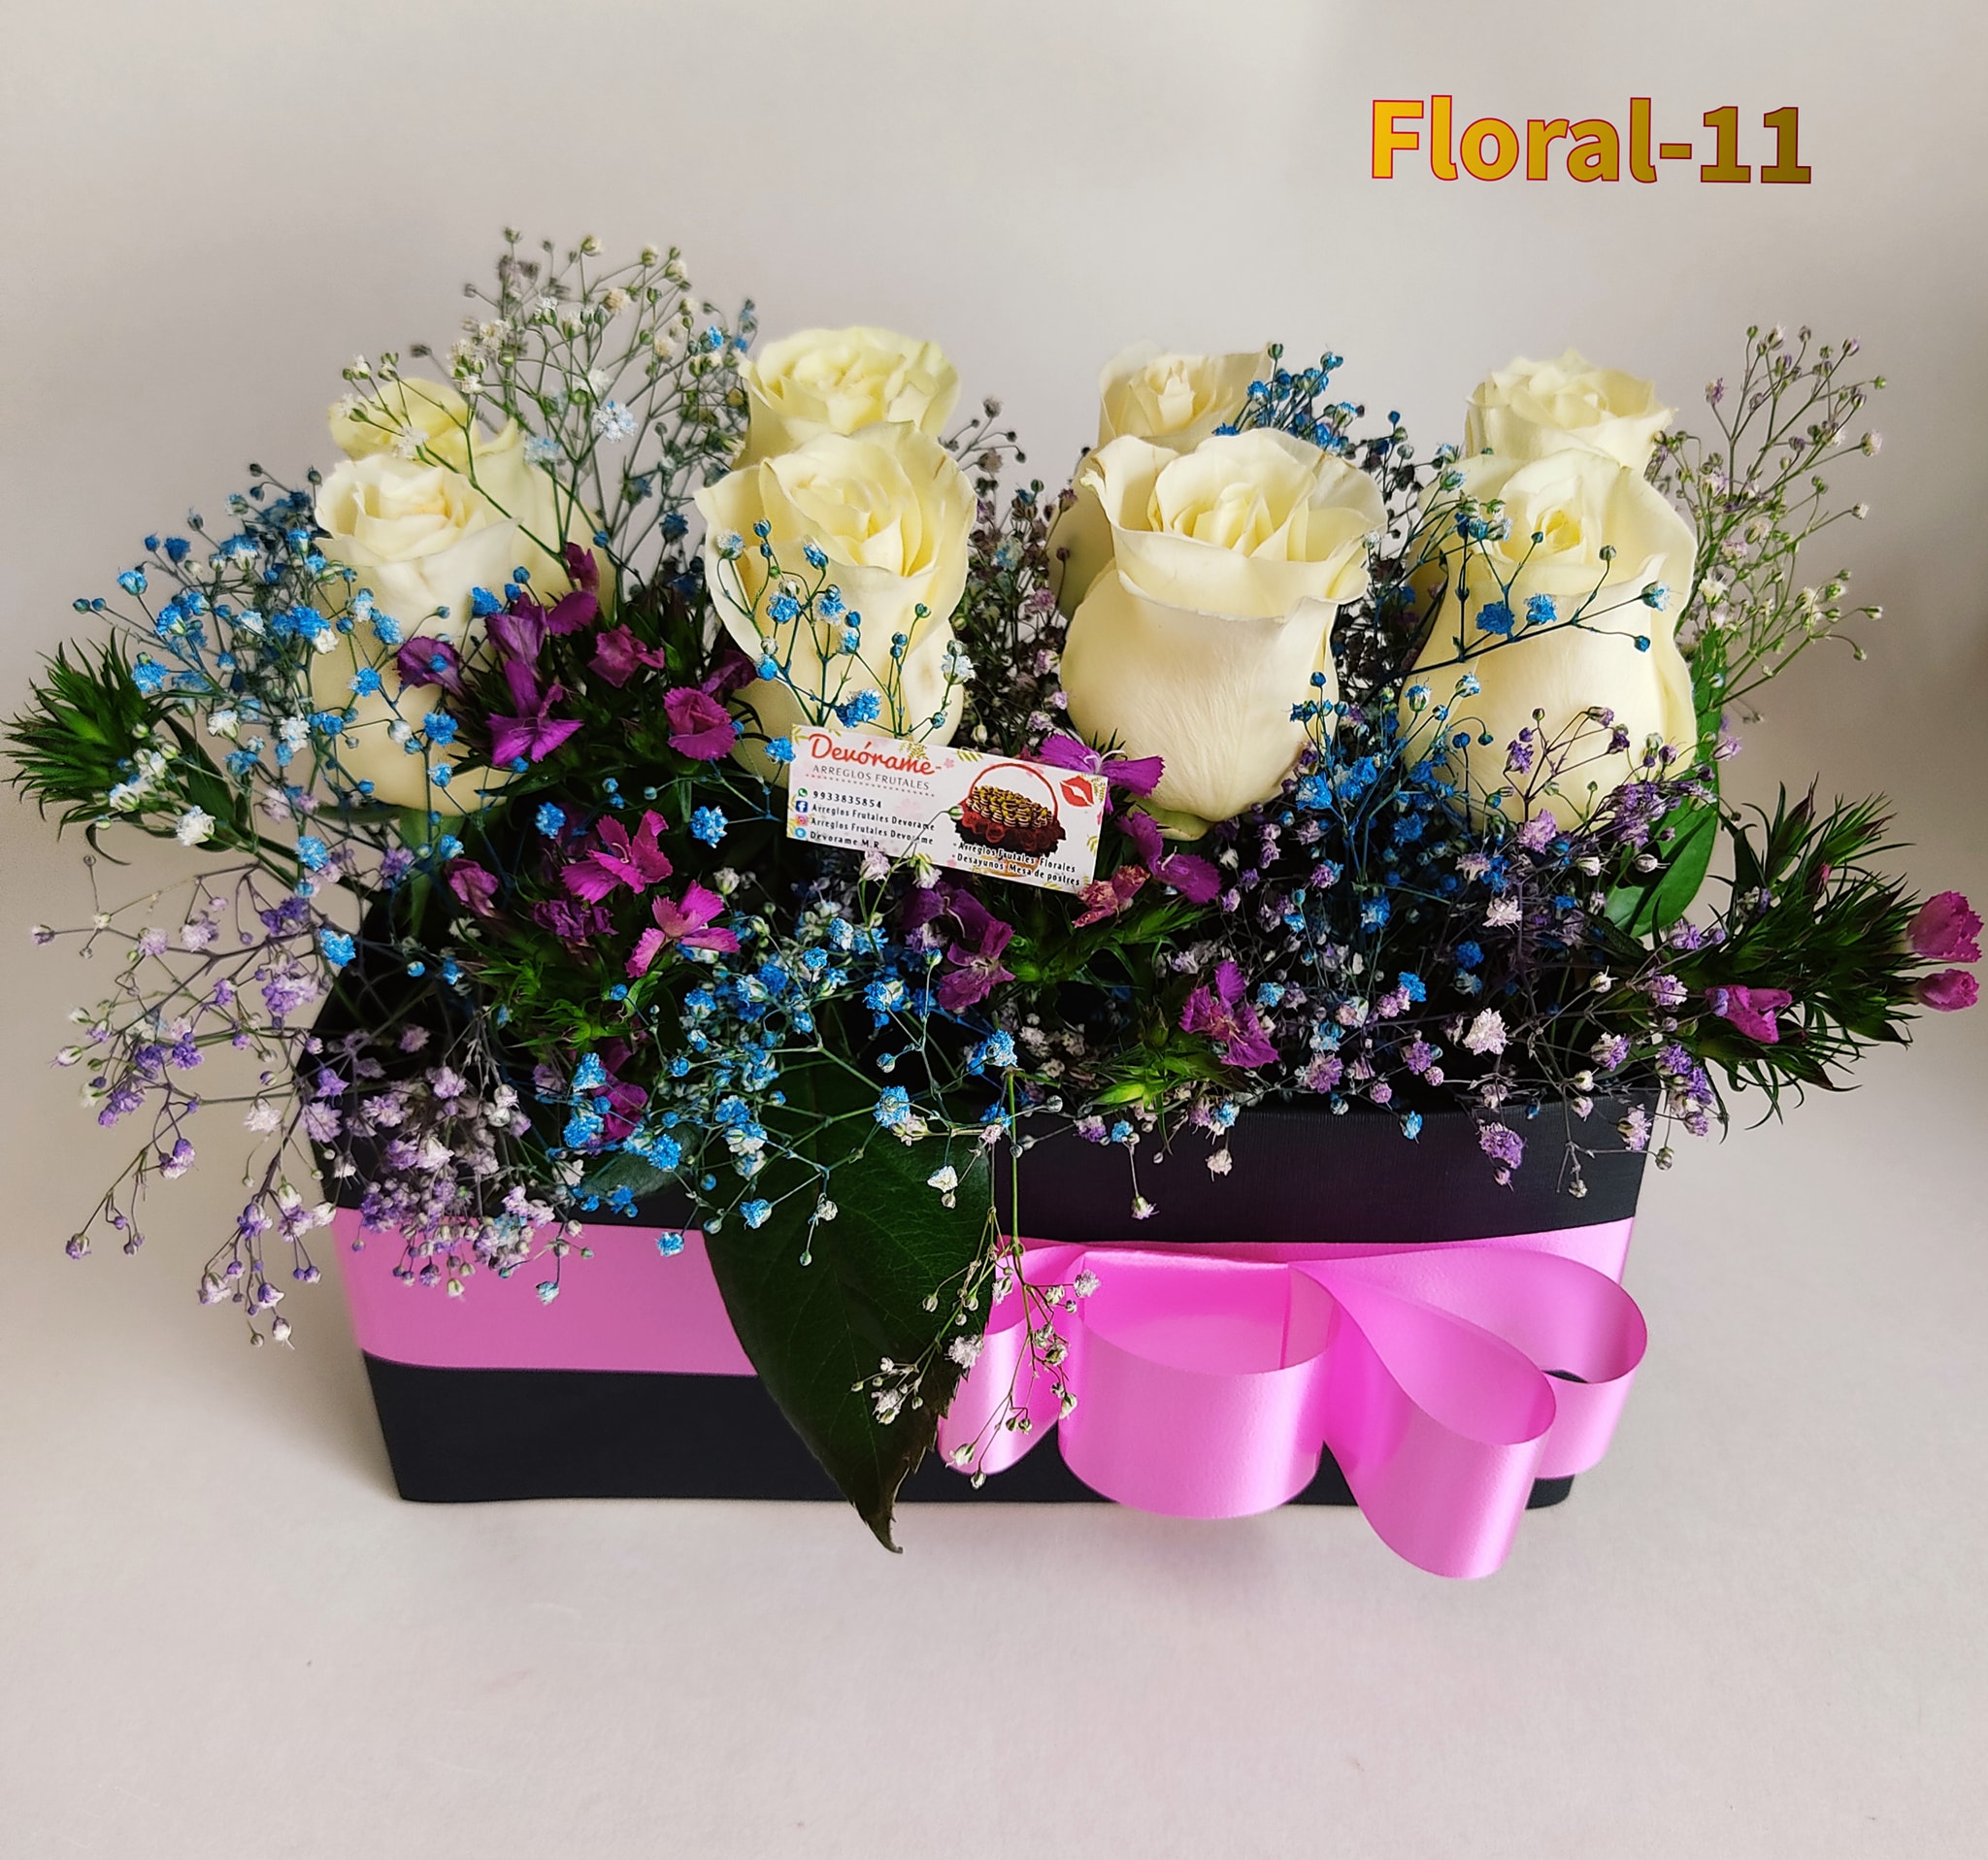 Arreglo frutal Floral-11 devorame